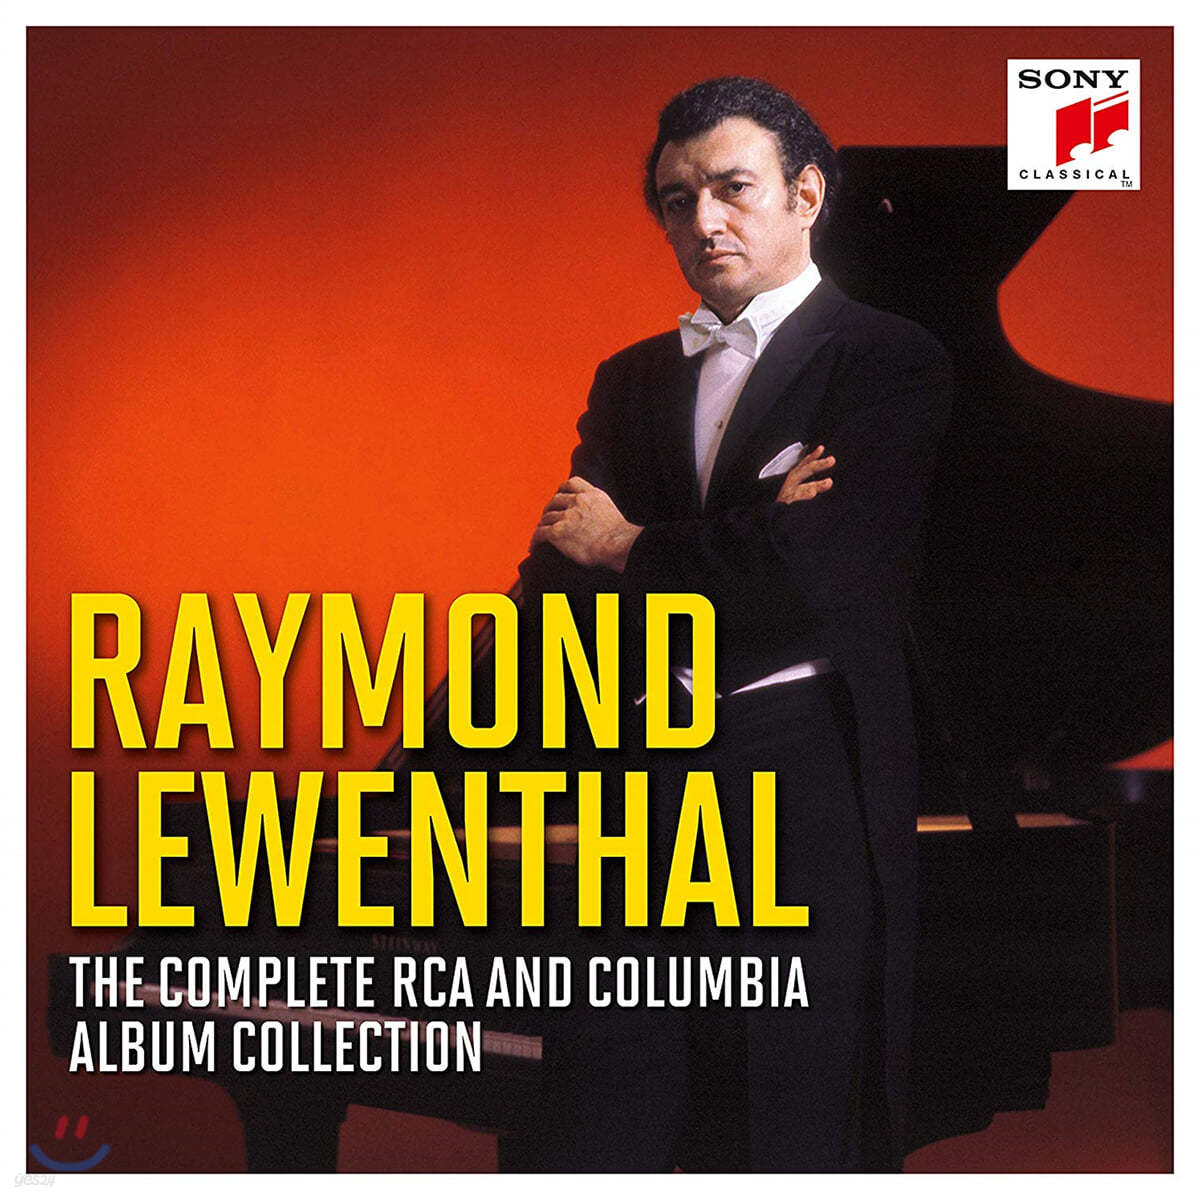 레이몬드 르웬탈 RCA, 컬럼비아 앨범 컬렉션 (Raymond Lewenthal - The Complete RCA and Columbia Album Collection)